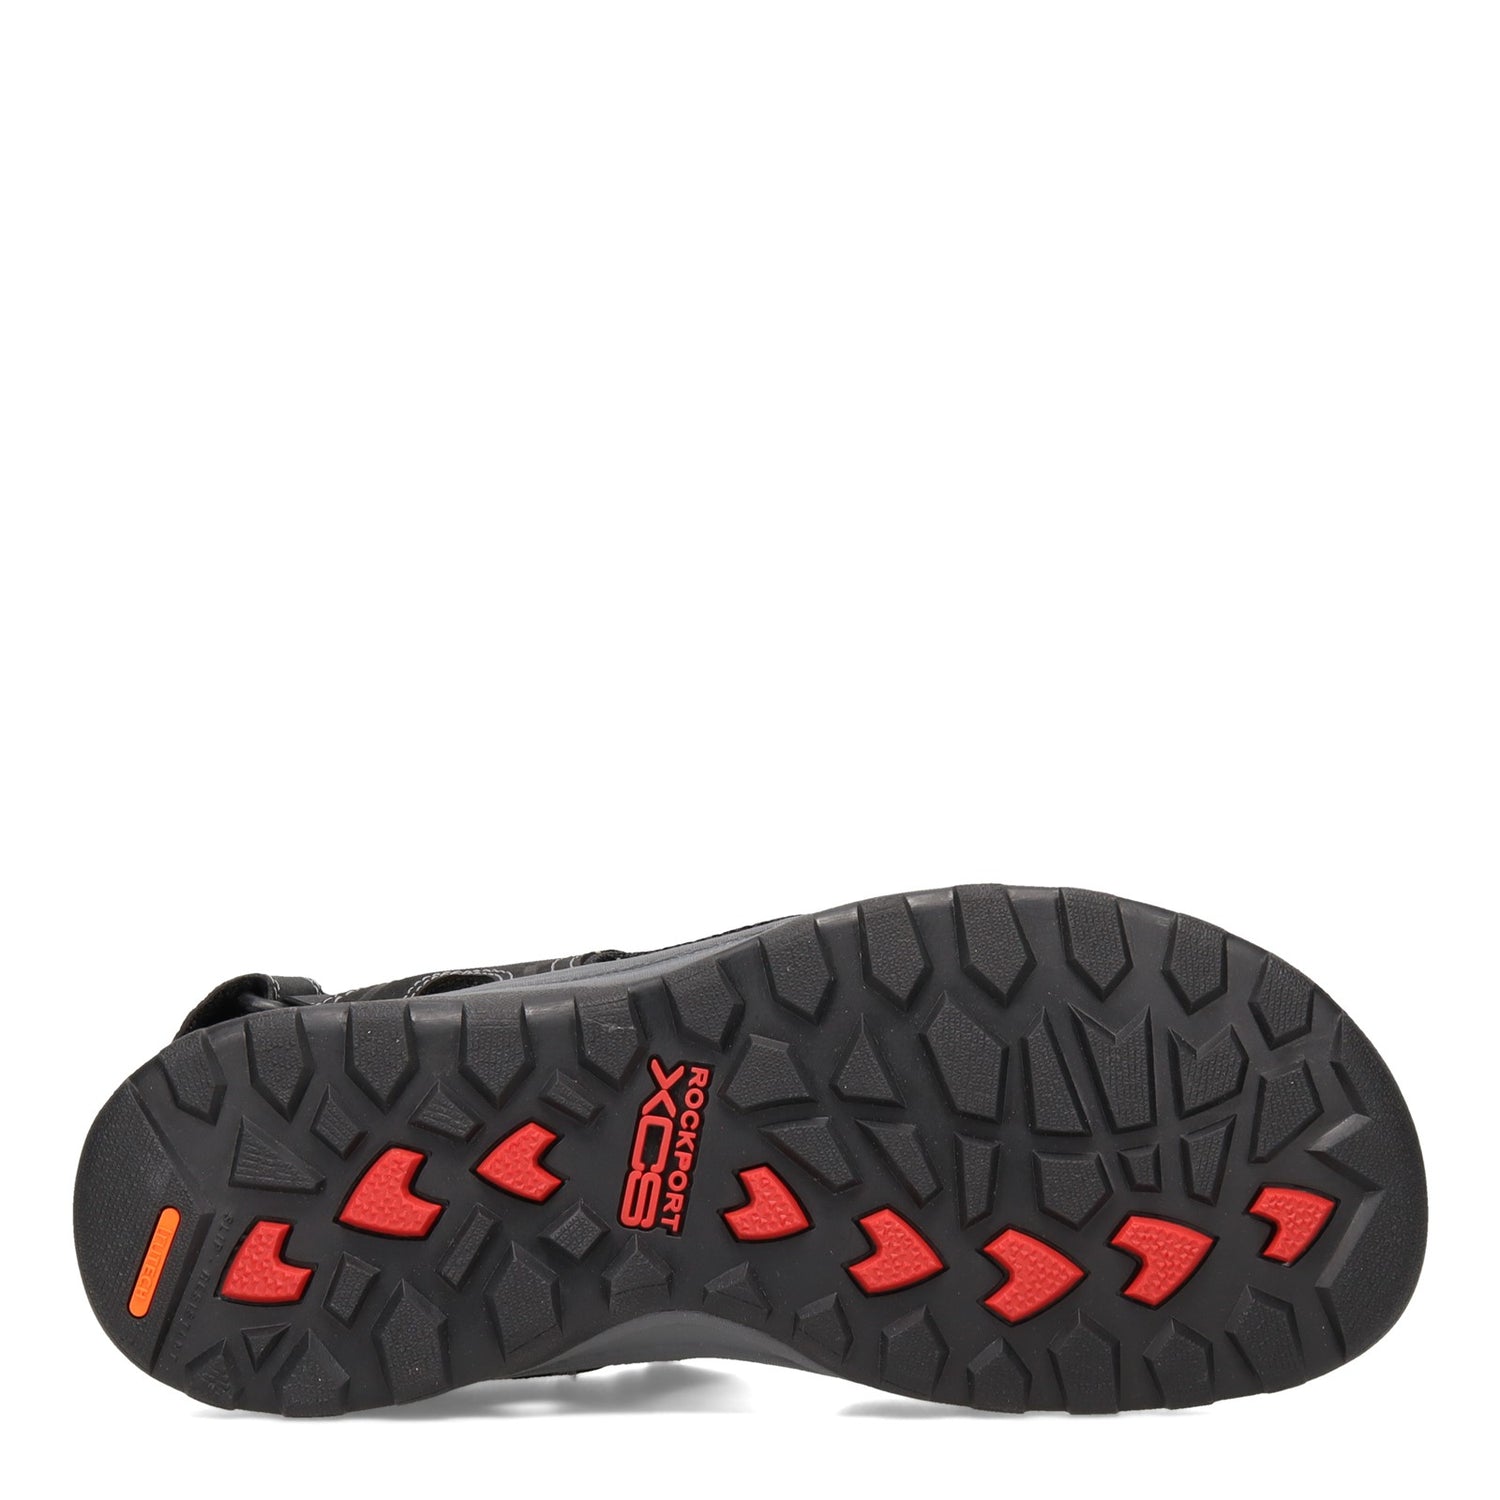 Peltz Shoes  Men's Rockport Eco Trail Technique Sandal BLACK CH0650